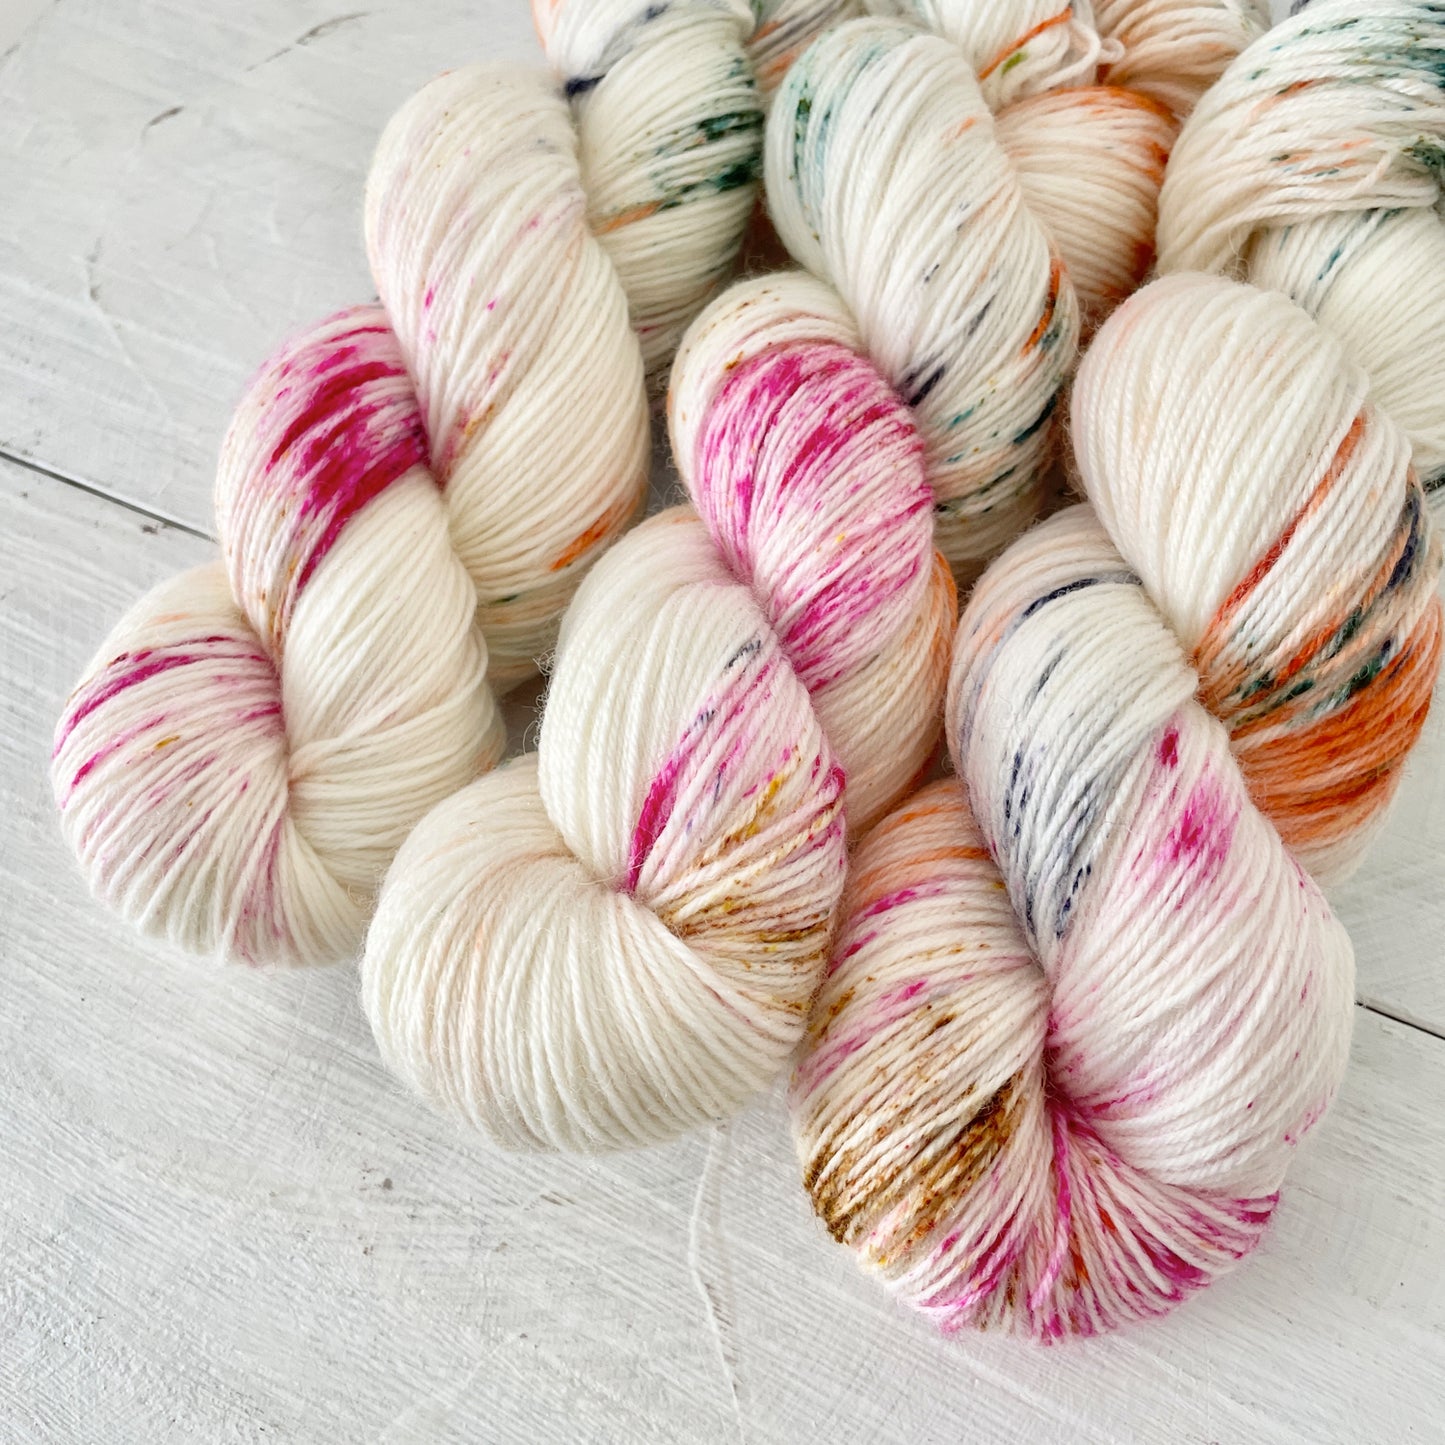 Hand-dyed yarn No.117 sock yarn "Oiseaux tristes"